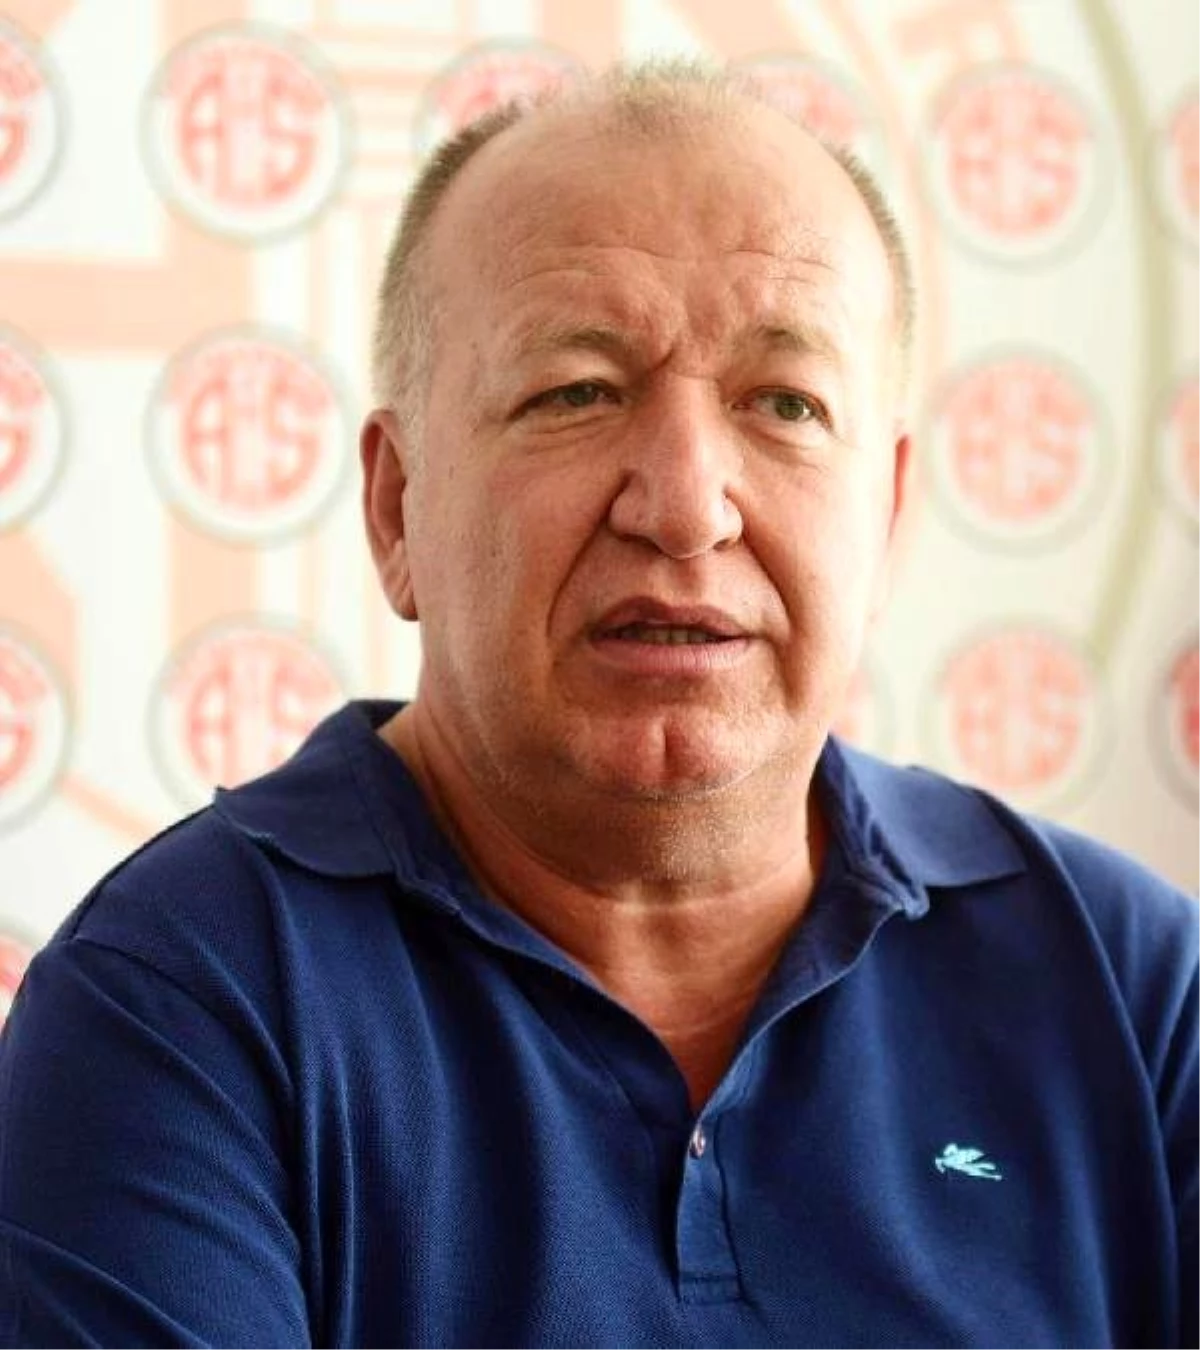 Antalyaspor Başkanı Gencer: "Hakemleri Konuşmak İstemiyorum"